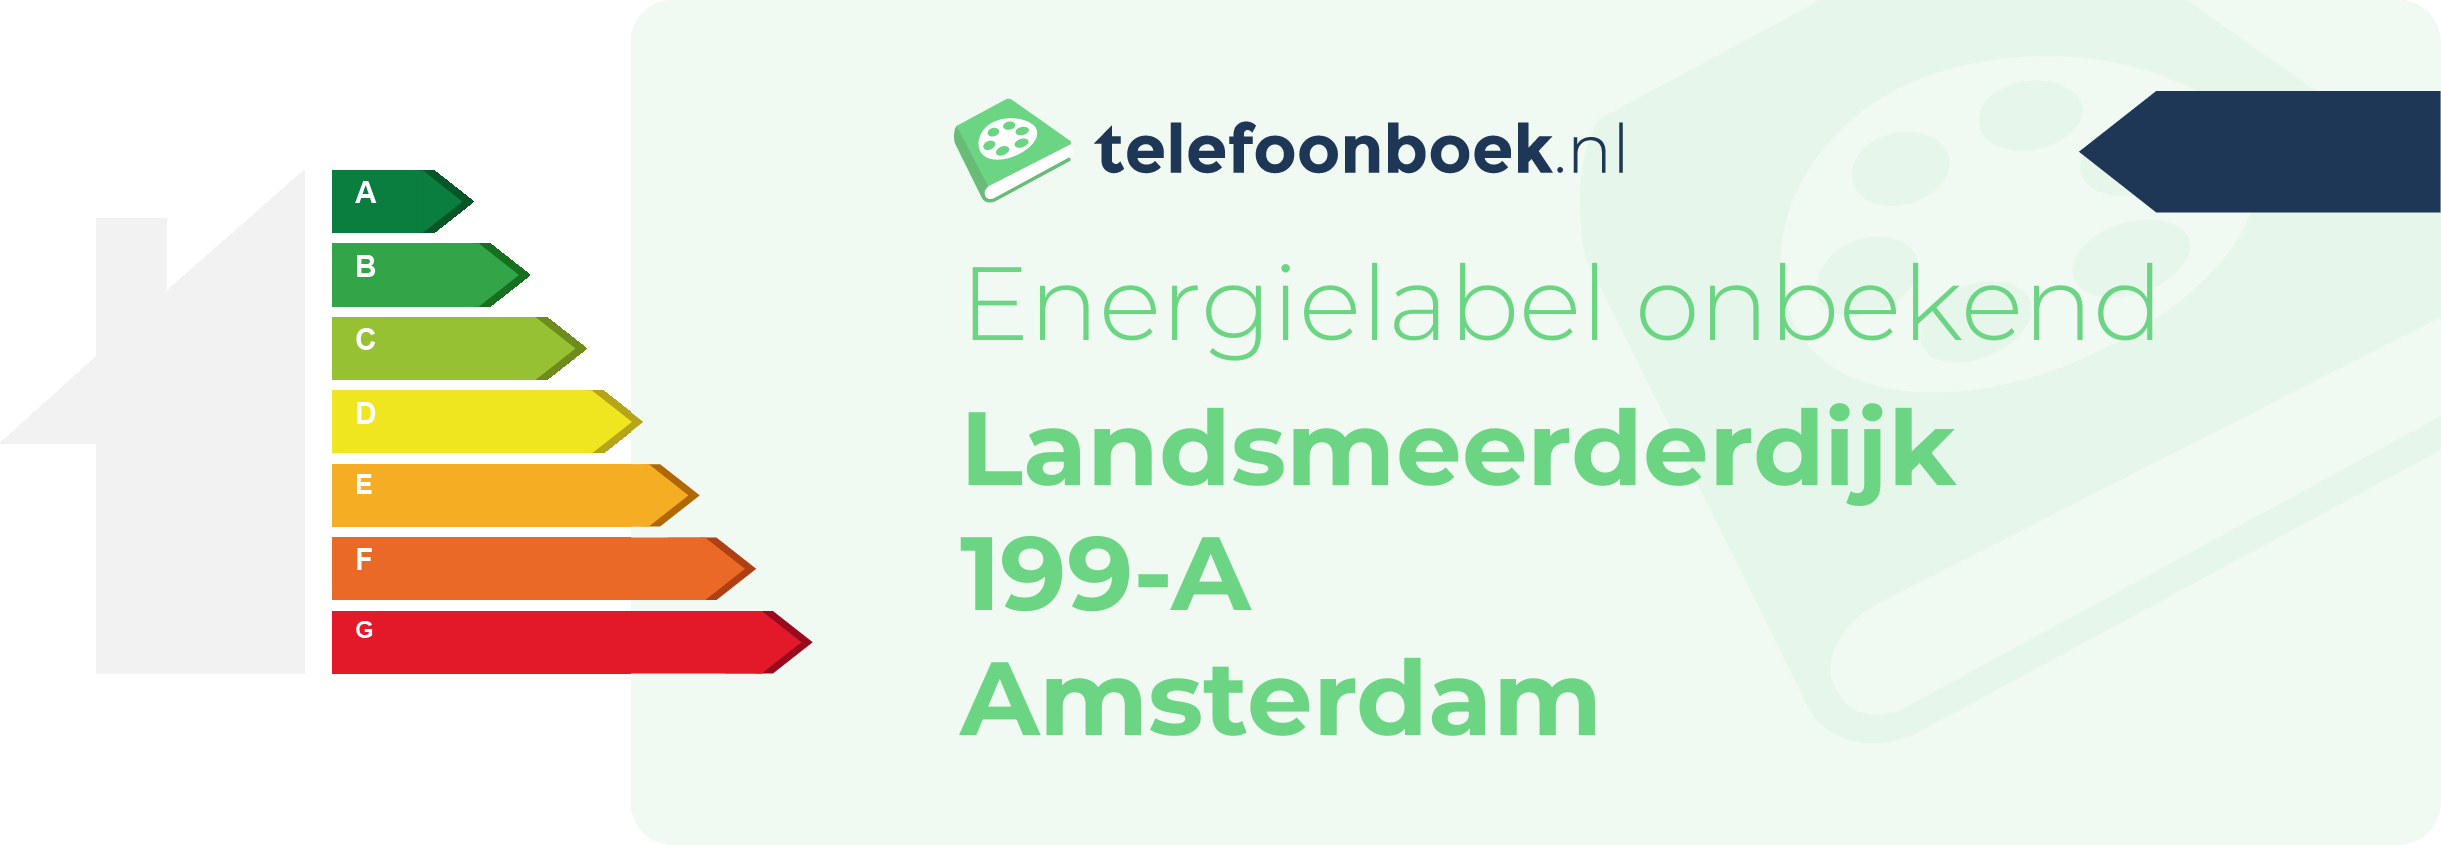 Energielabel Landsmeerderdijk 199-A Amsterdam